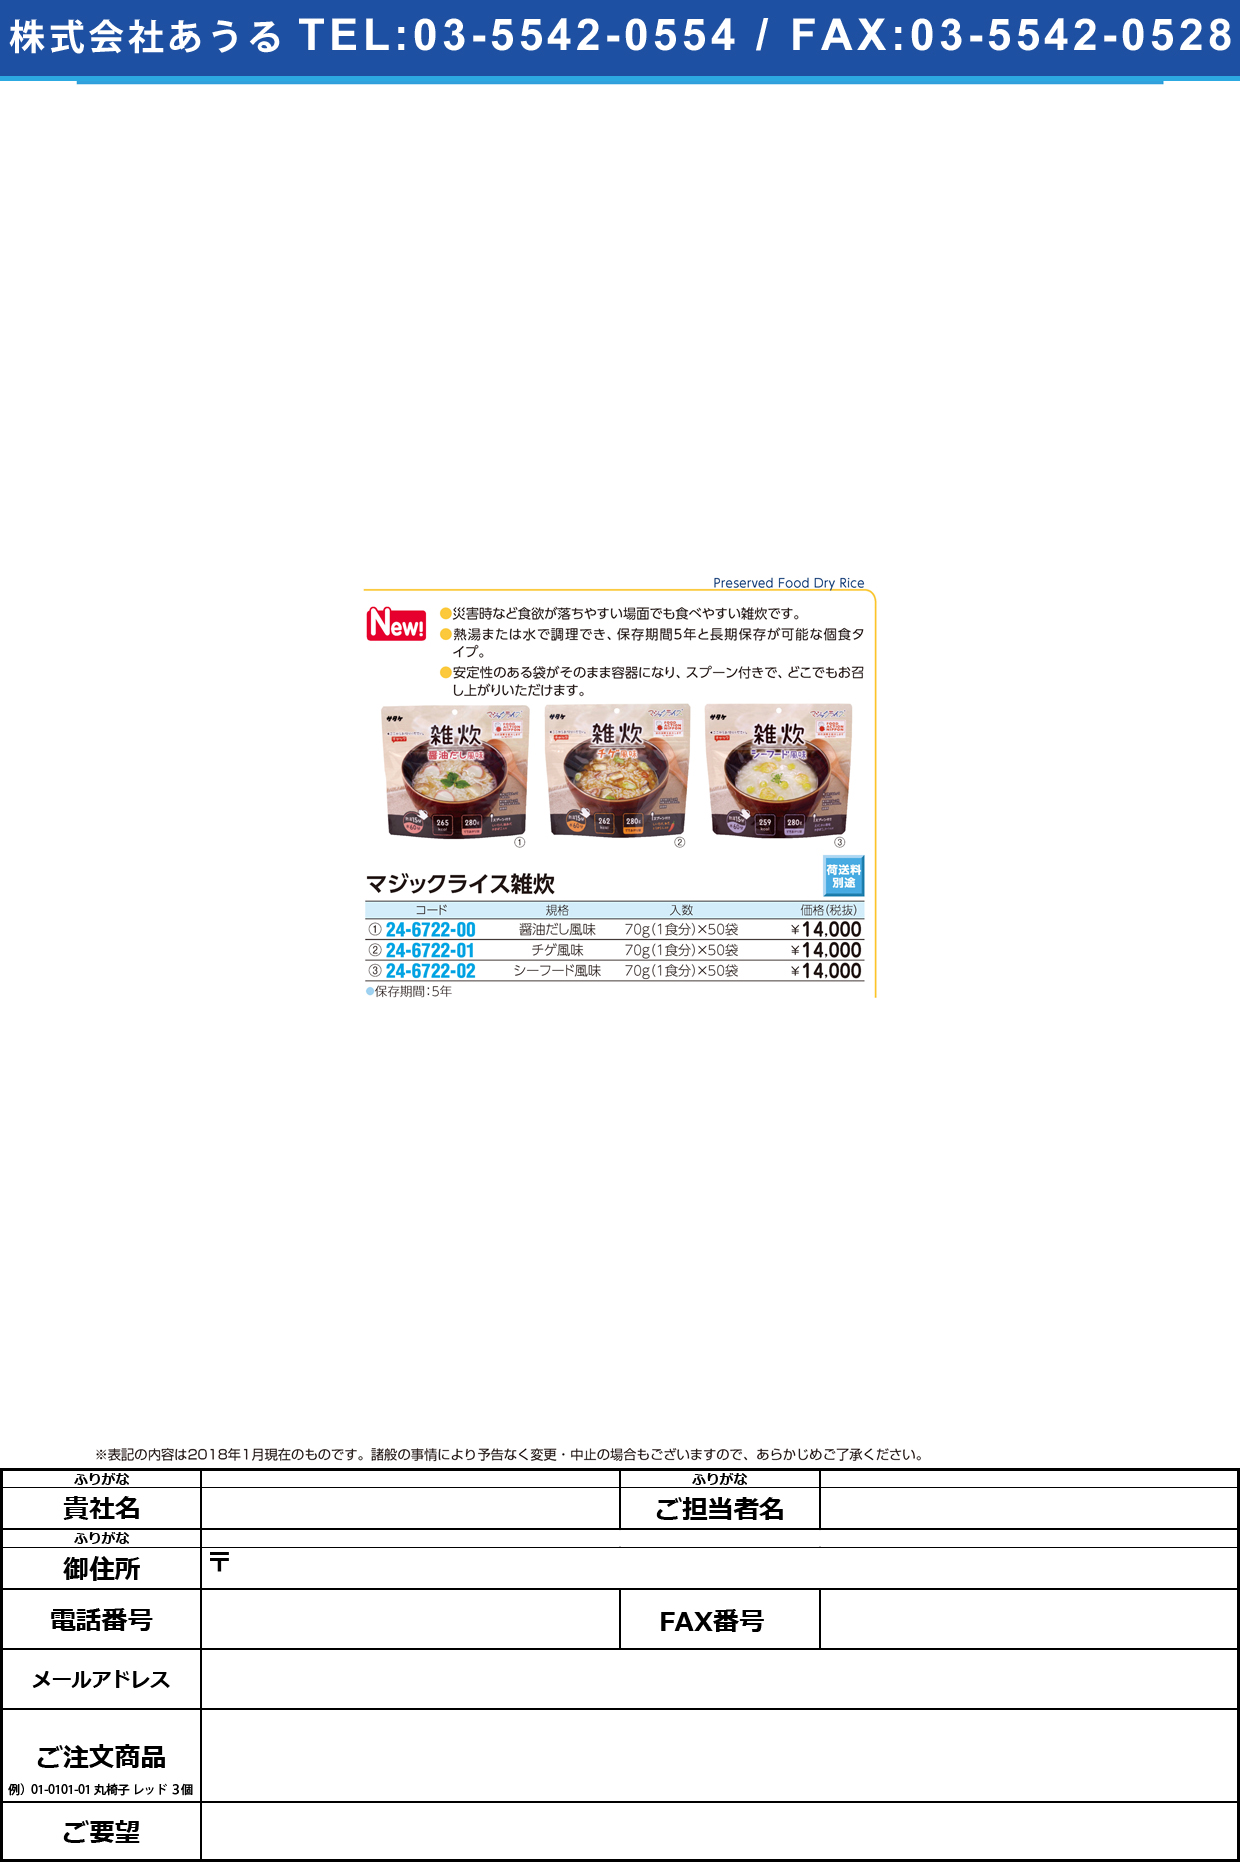 (24-6722-01)マジックライス雑炊チゲ風味 (70G･1ｼｮｸ)50ﾌｸﾛ ﾏｼﾞｯｸﾗｲｽｿﾞｳｽｲ【1箱単位】【2018年カタログ商品】